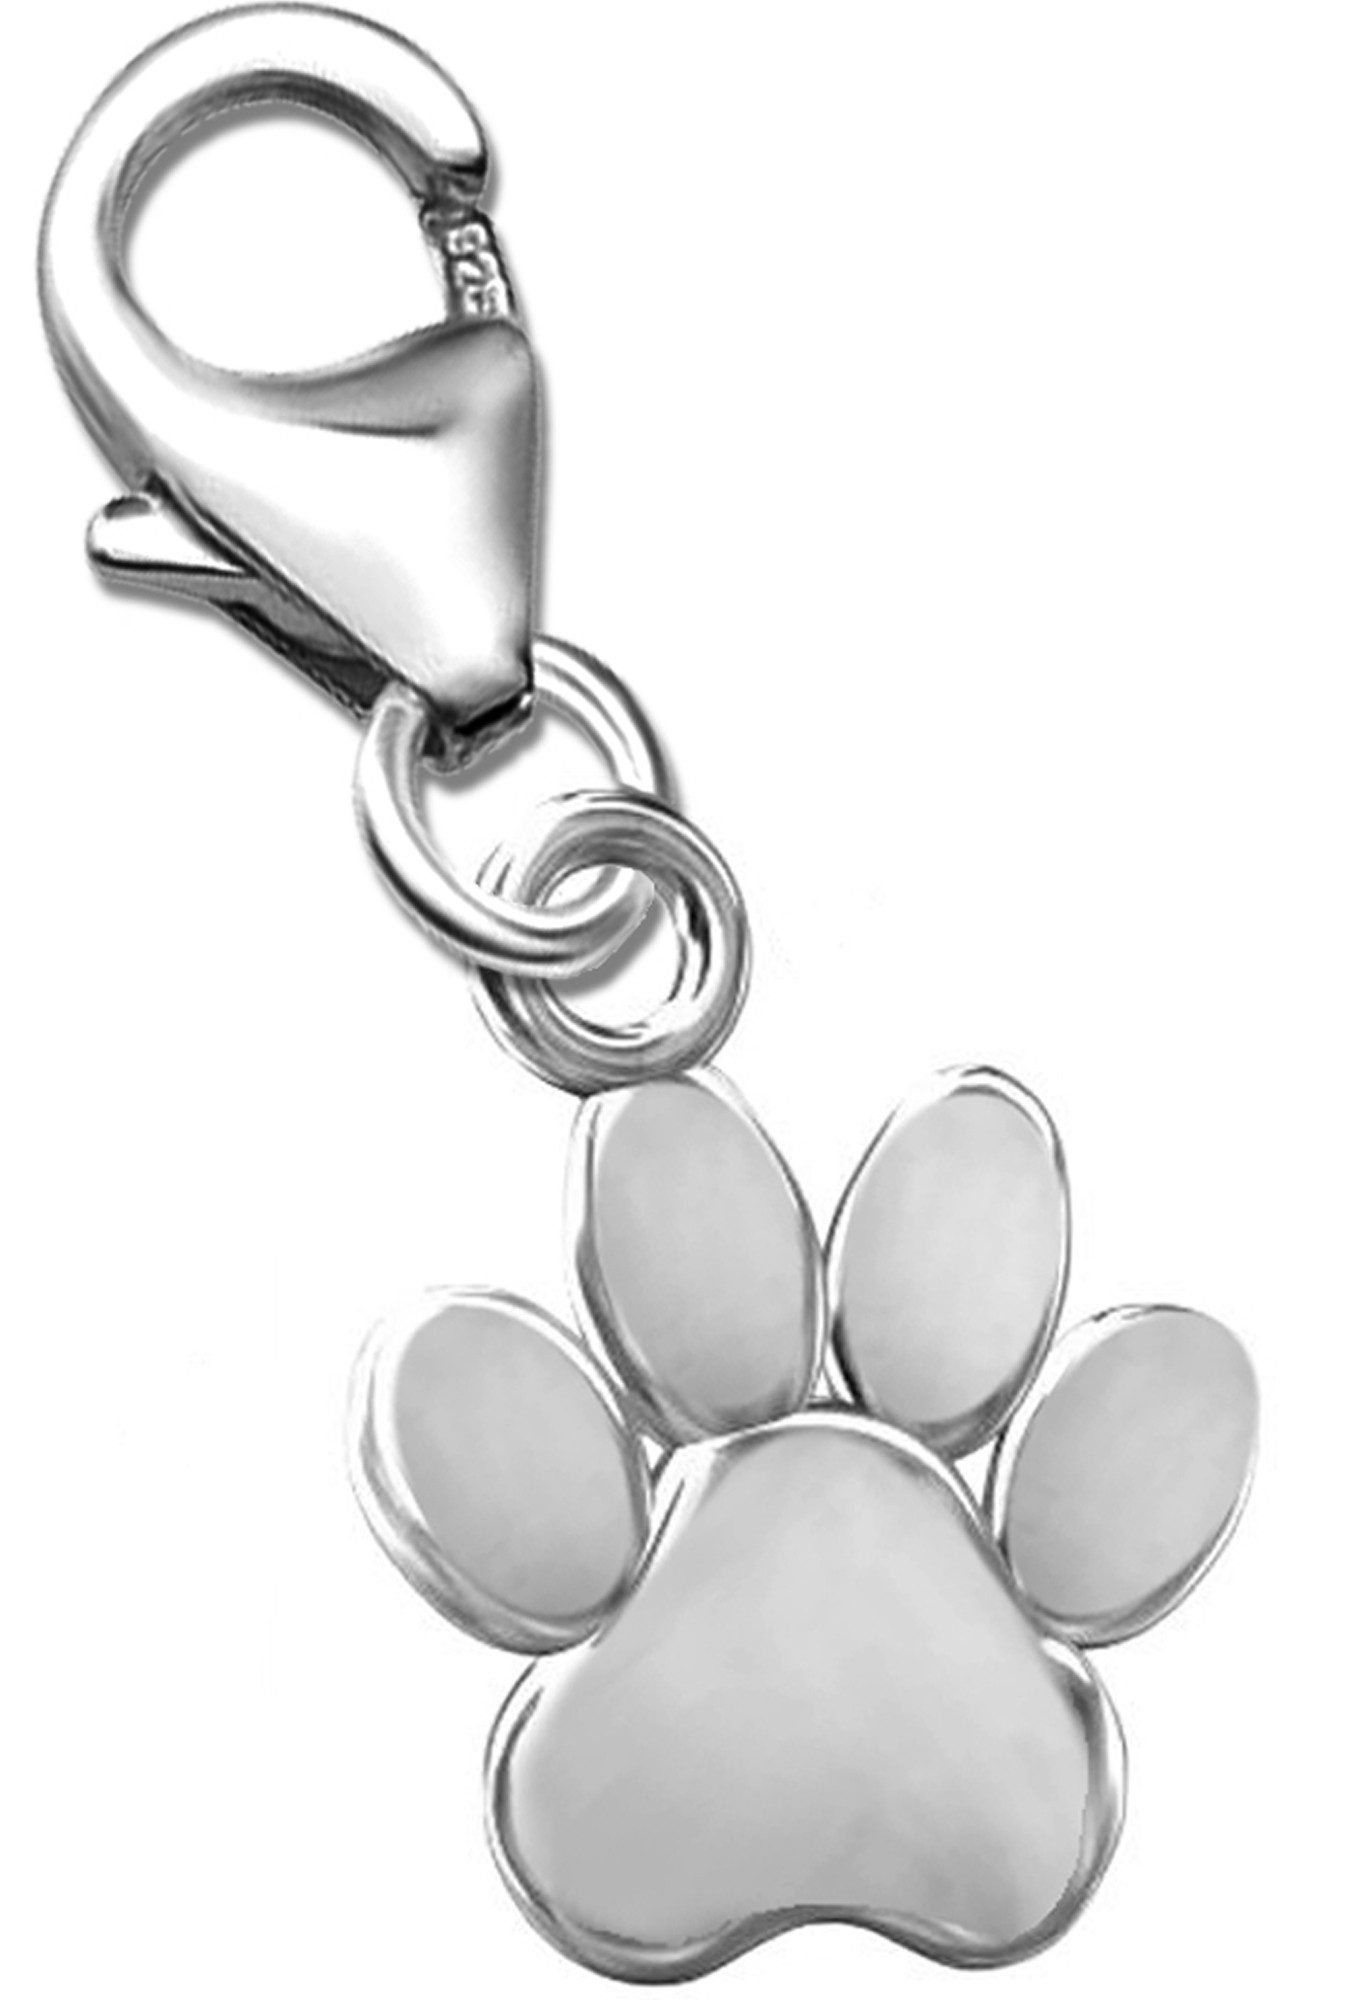 Limana Charm-Einhänger echt 925 Silber Pfote Karabiner Anhänger für Armband Kette, Hunde Katze Pfote Pfötchen